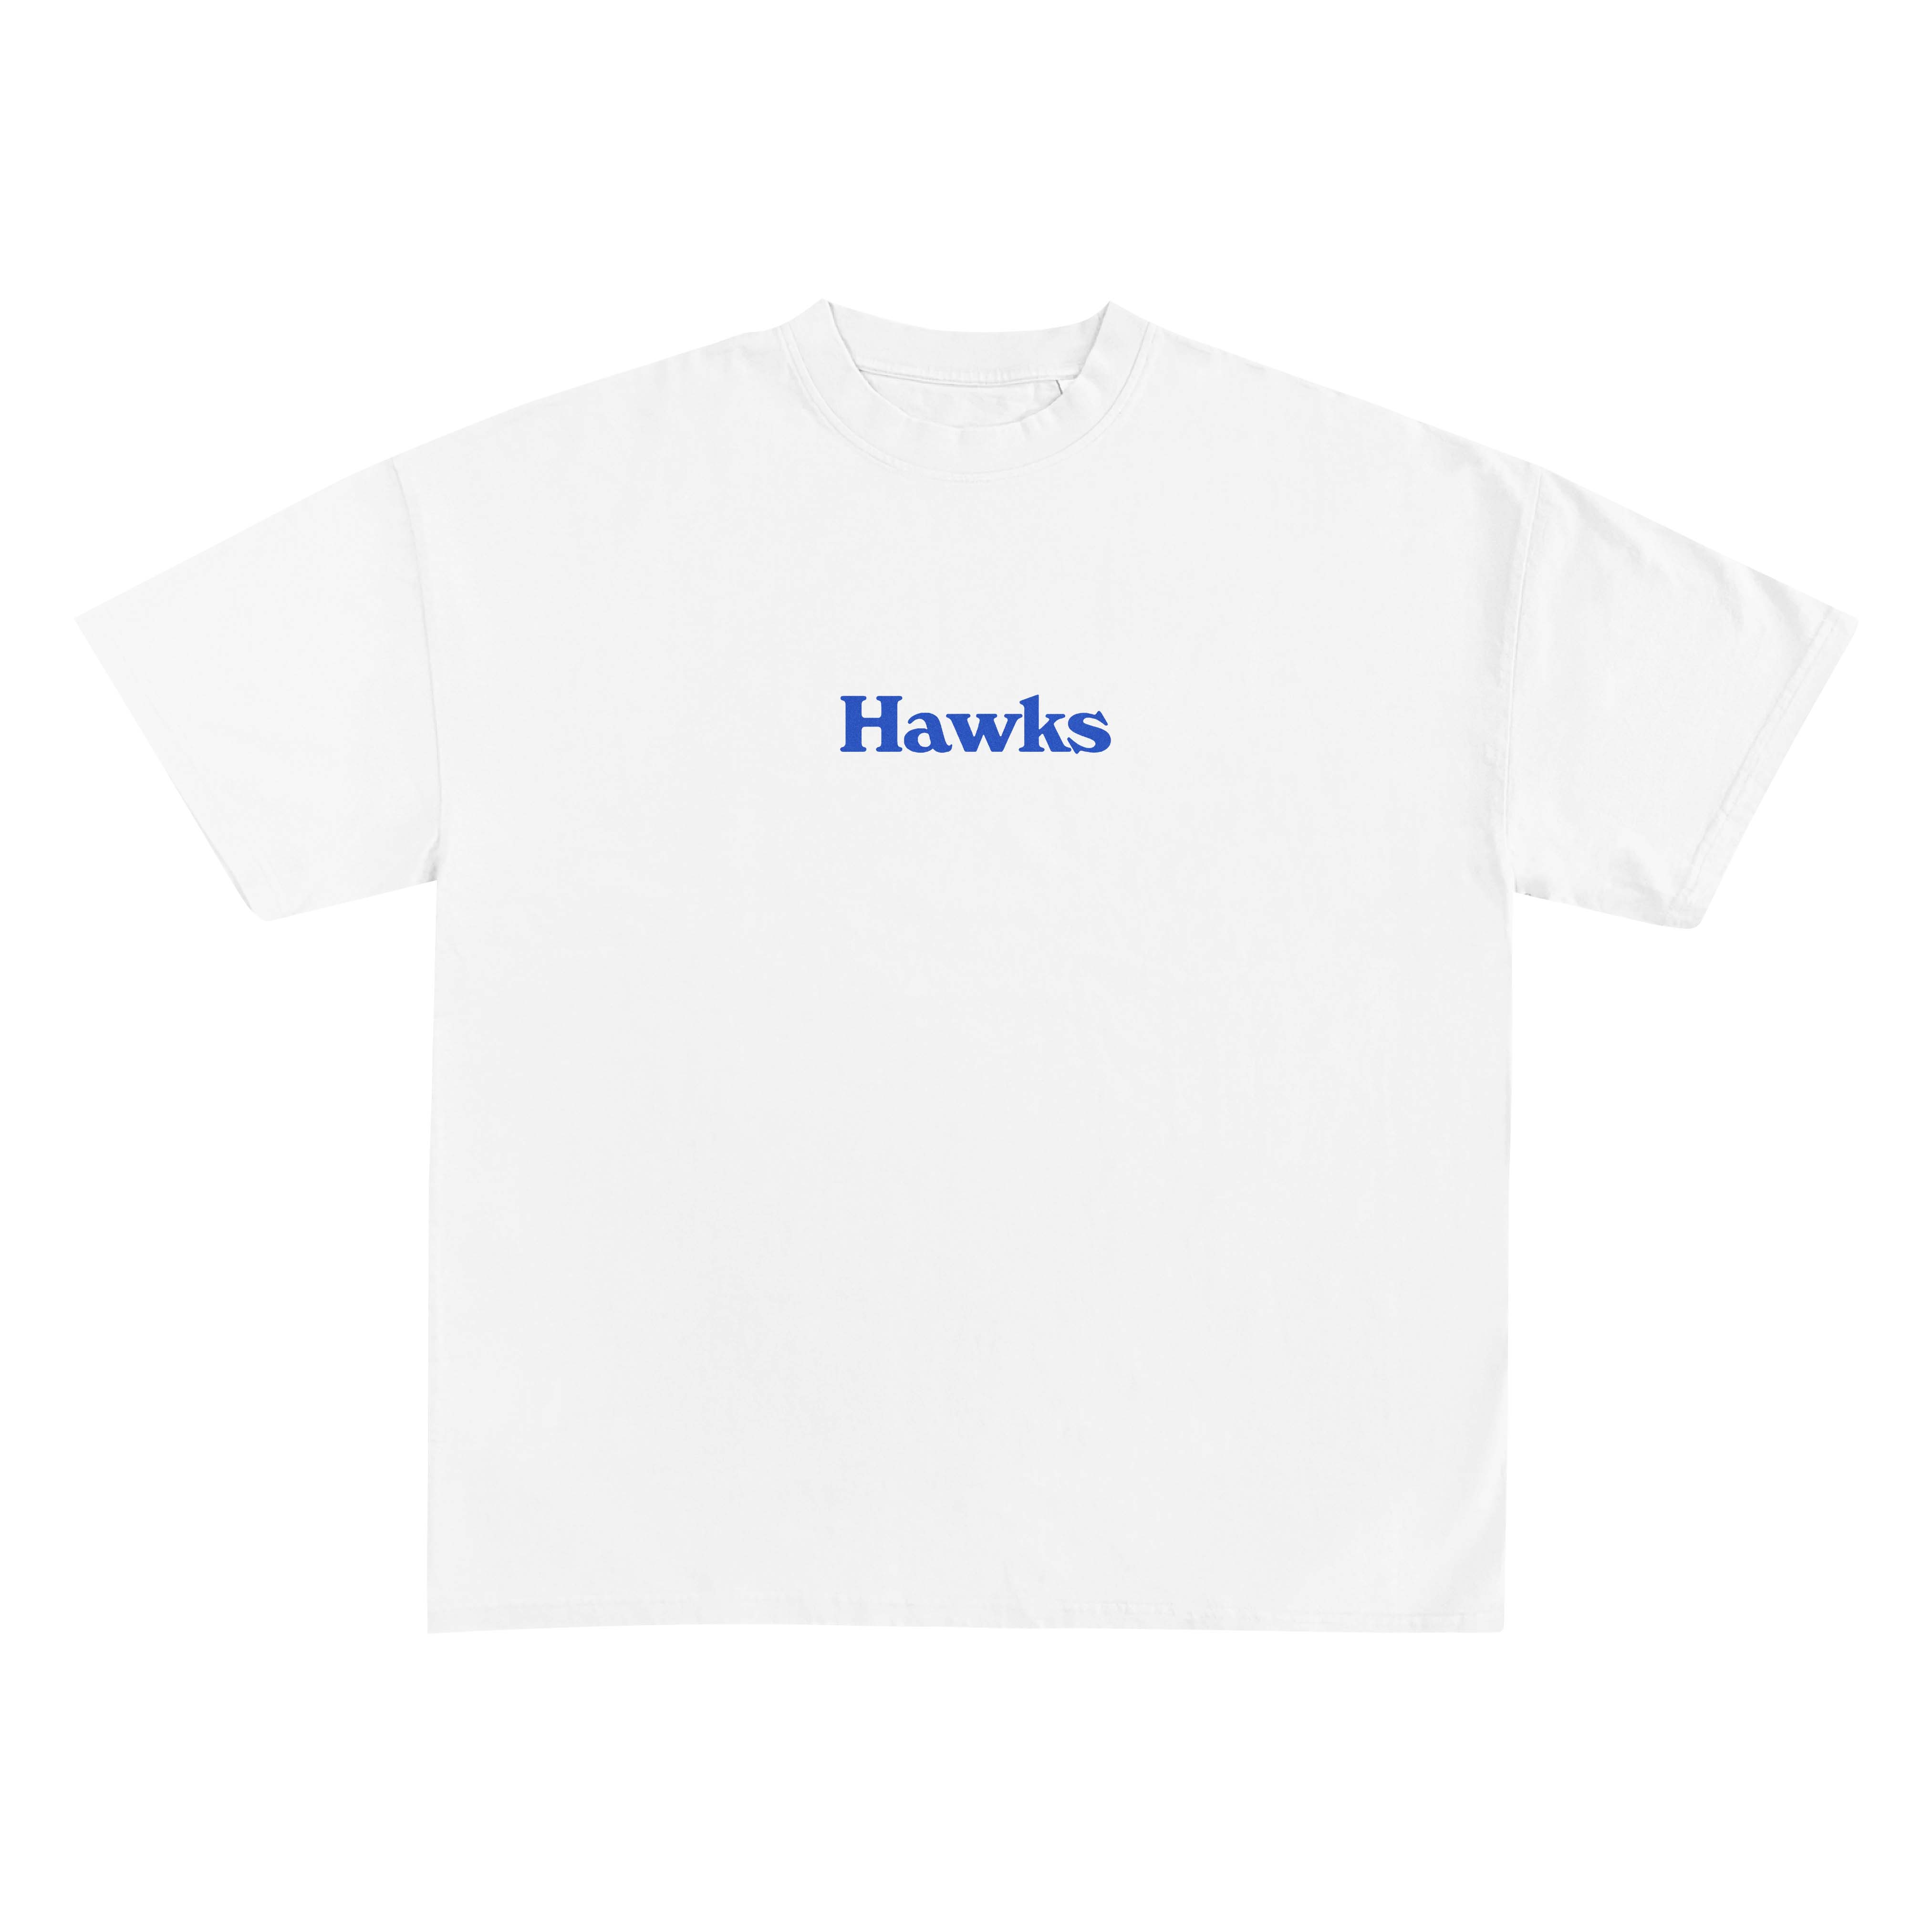 Let's Go Hawks T-Shirt - Blue